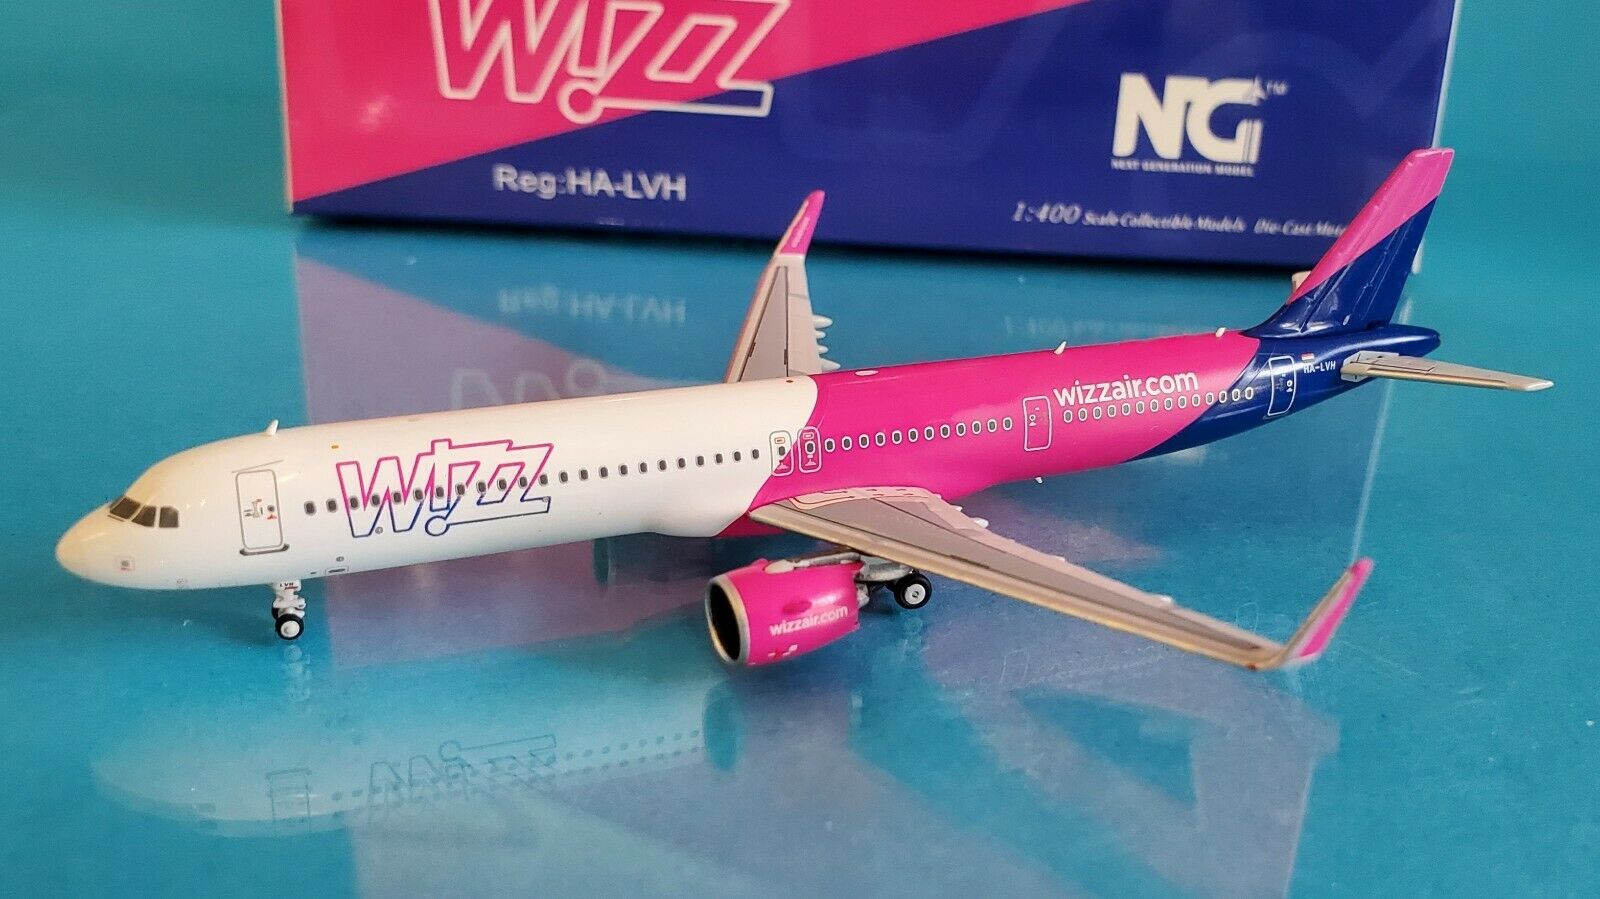 NG MODELS 1/400 Wizz Air Airbus A321neo HA-LVH (13011)